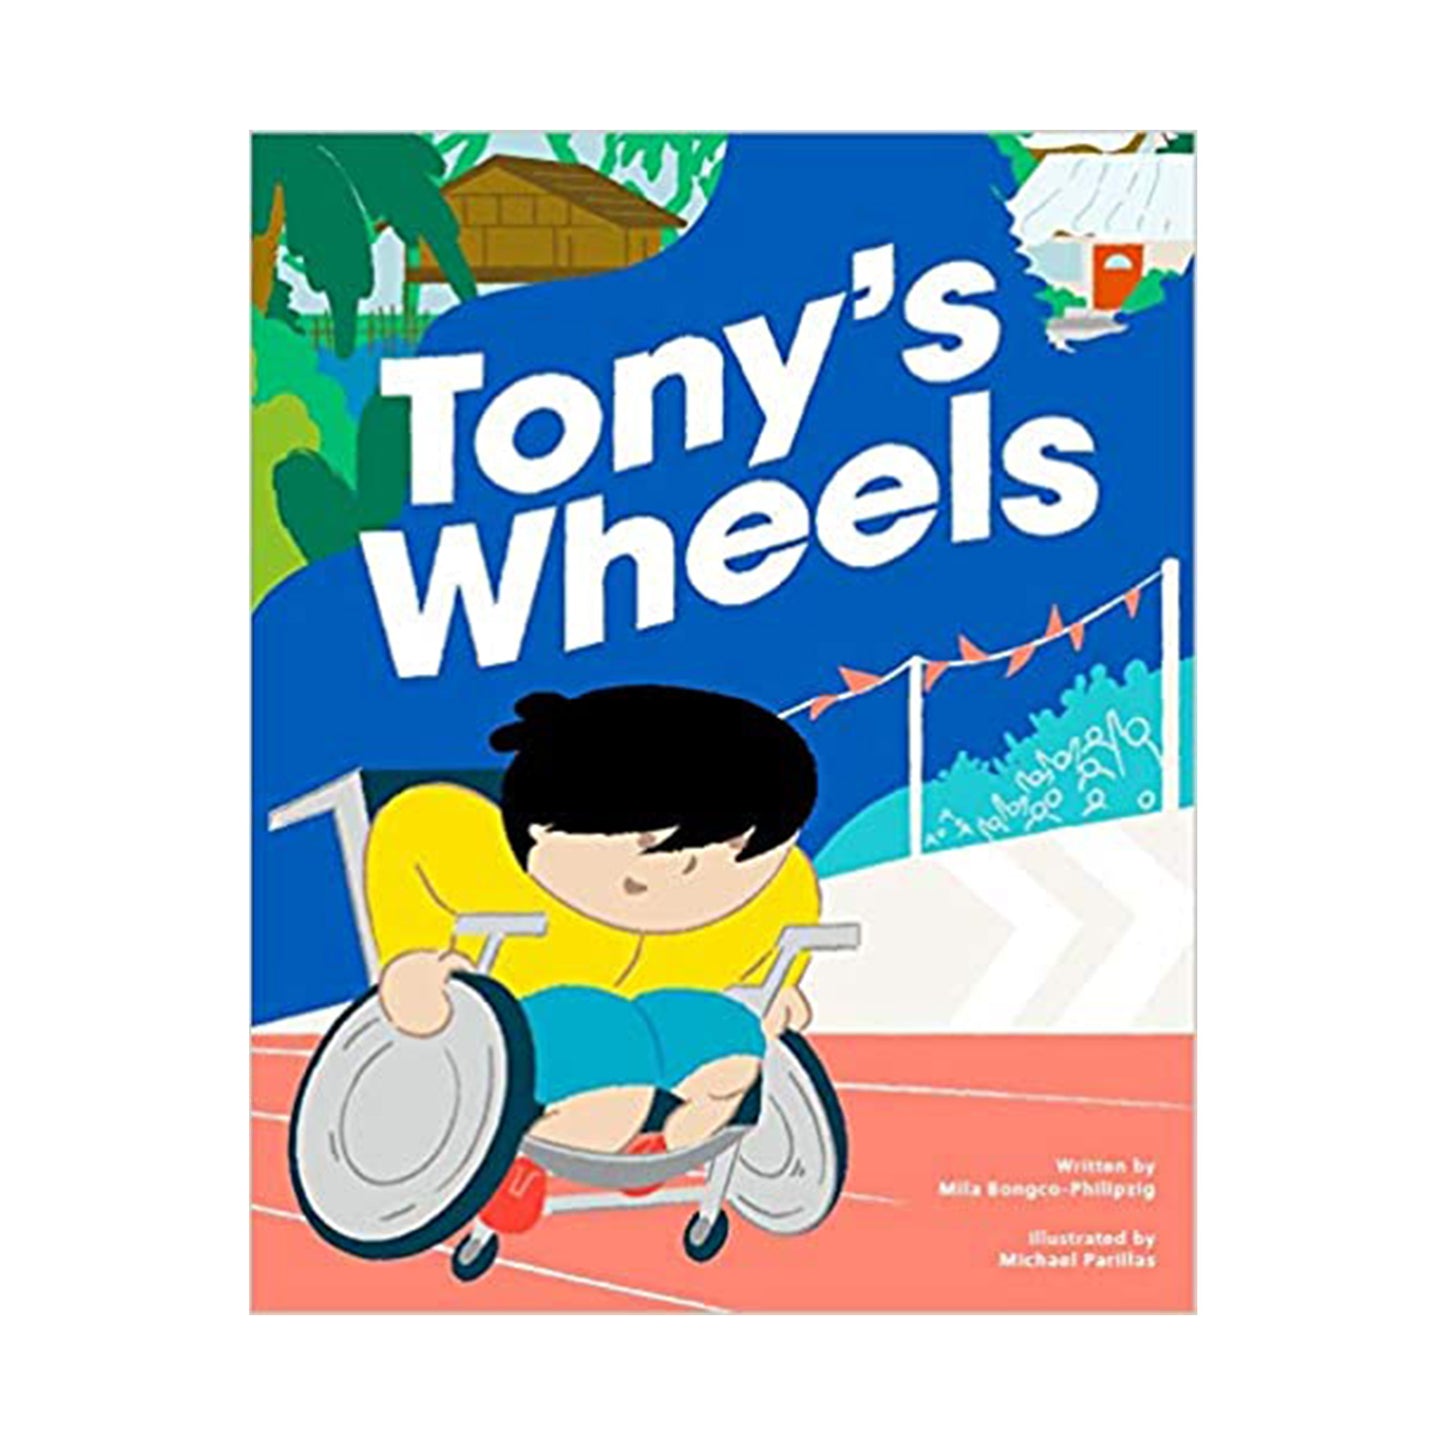 Tony's Wheels - English and Filipino (Tagalog)